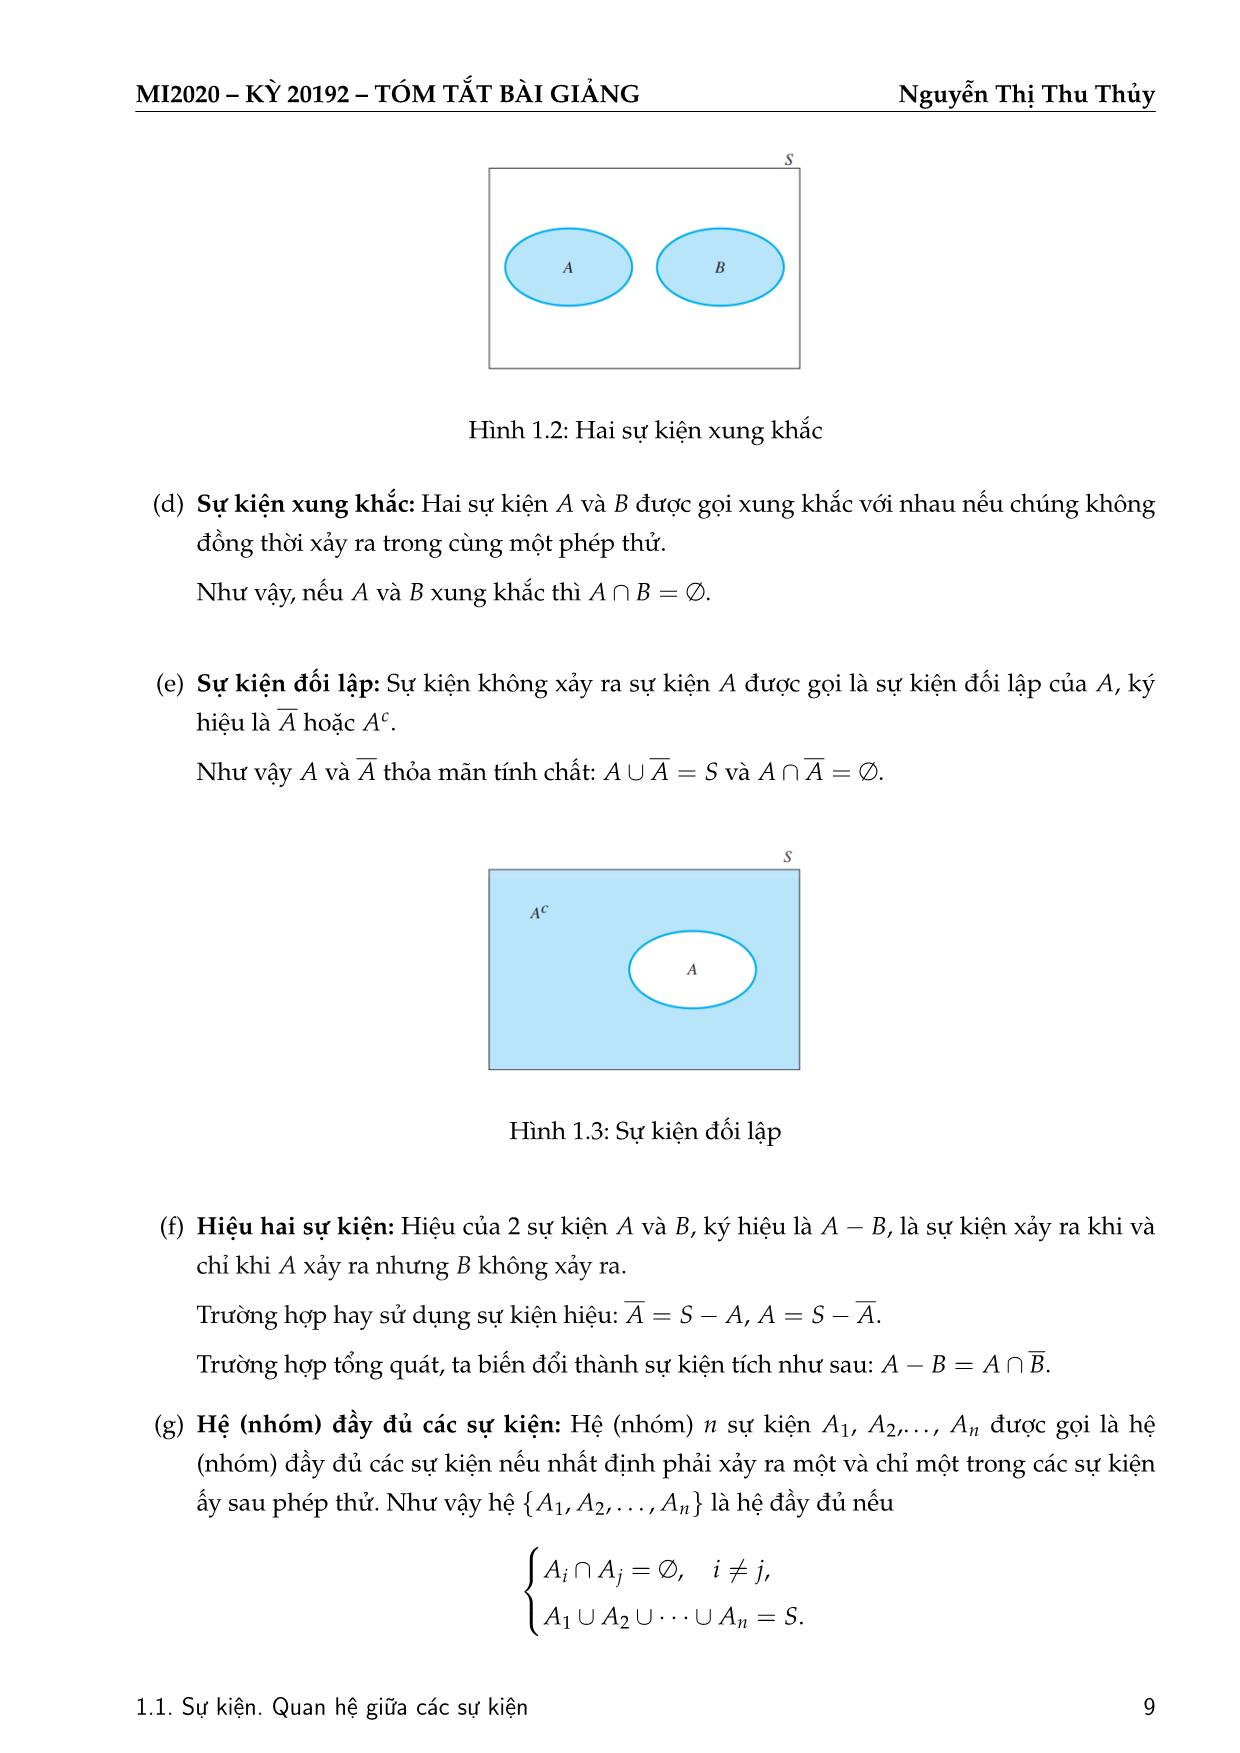 Bài giảng Xác suất thống kê - Chương 1: Sự kiện ngẫu nhiên và phép tính xác suất - Nguyễn Thị Thu Thủy trang 10